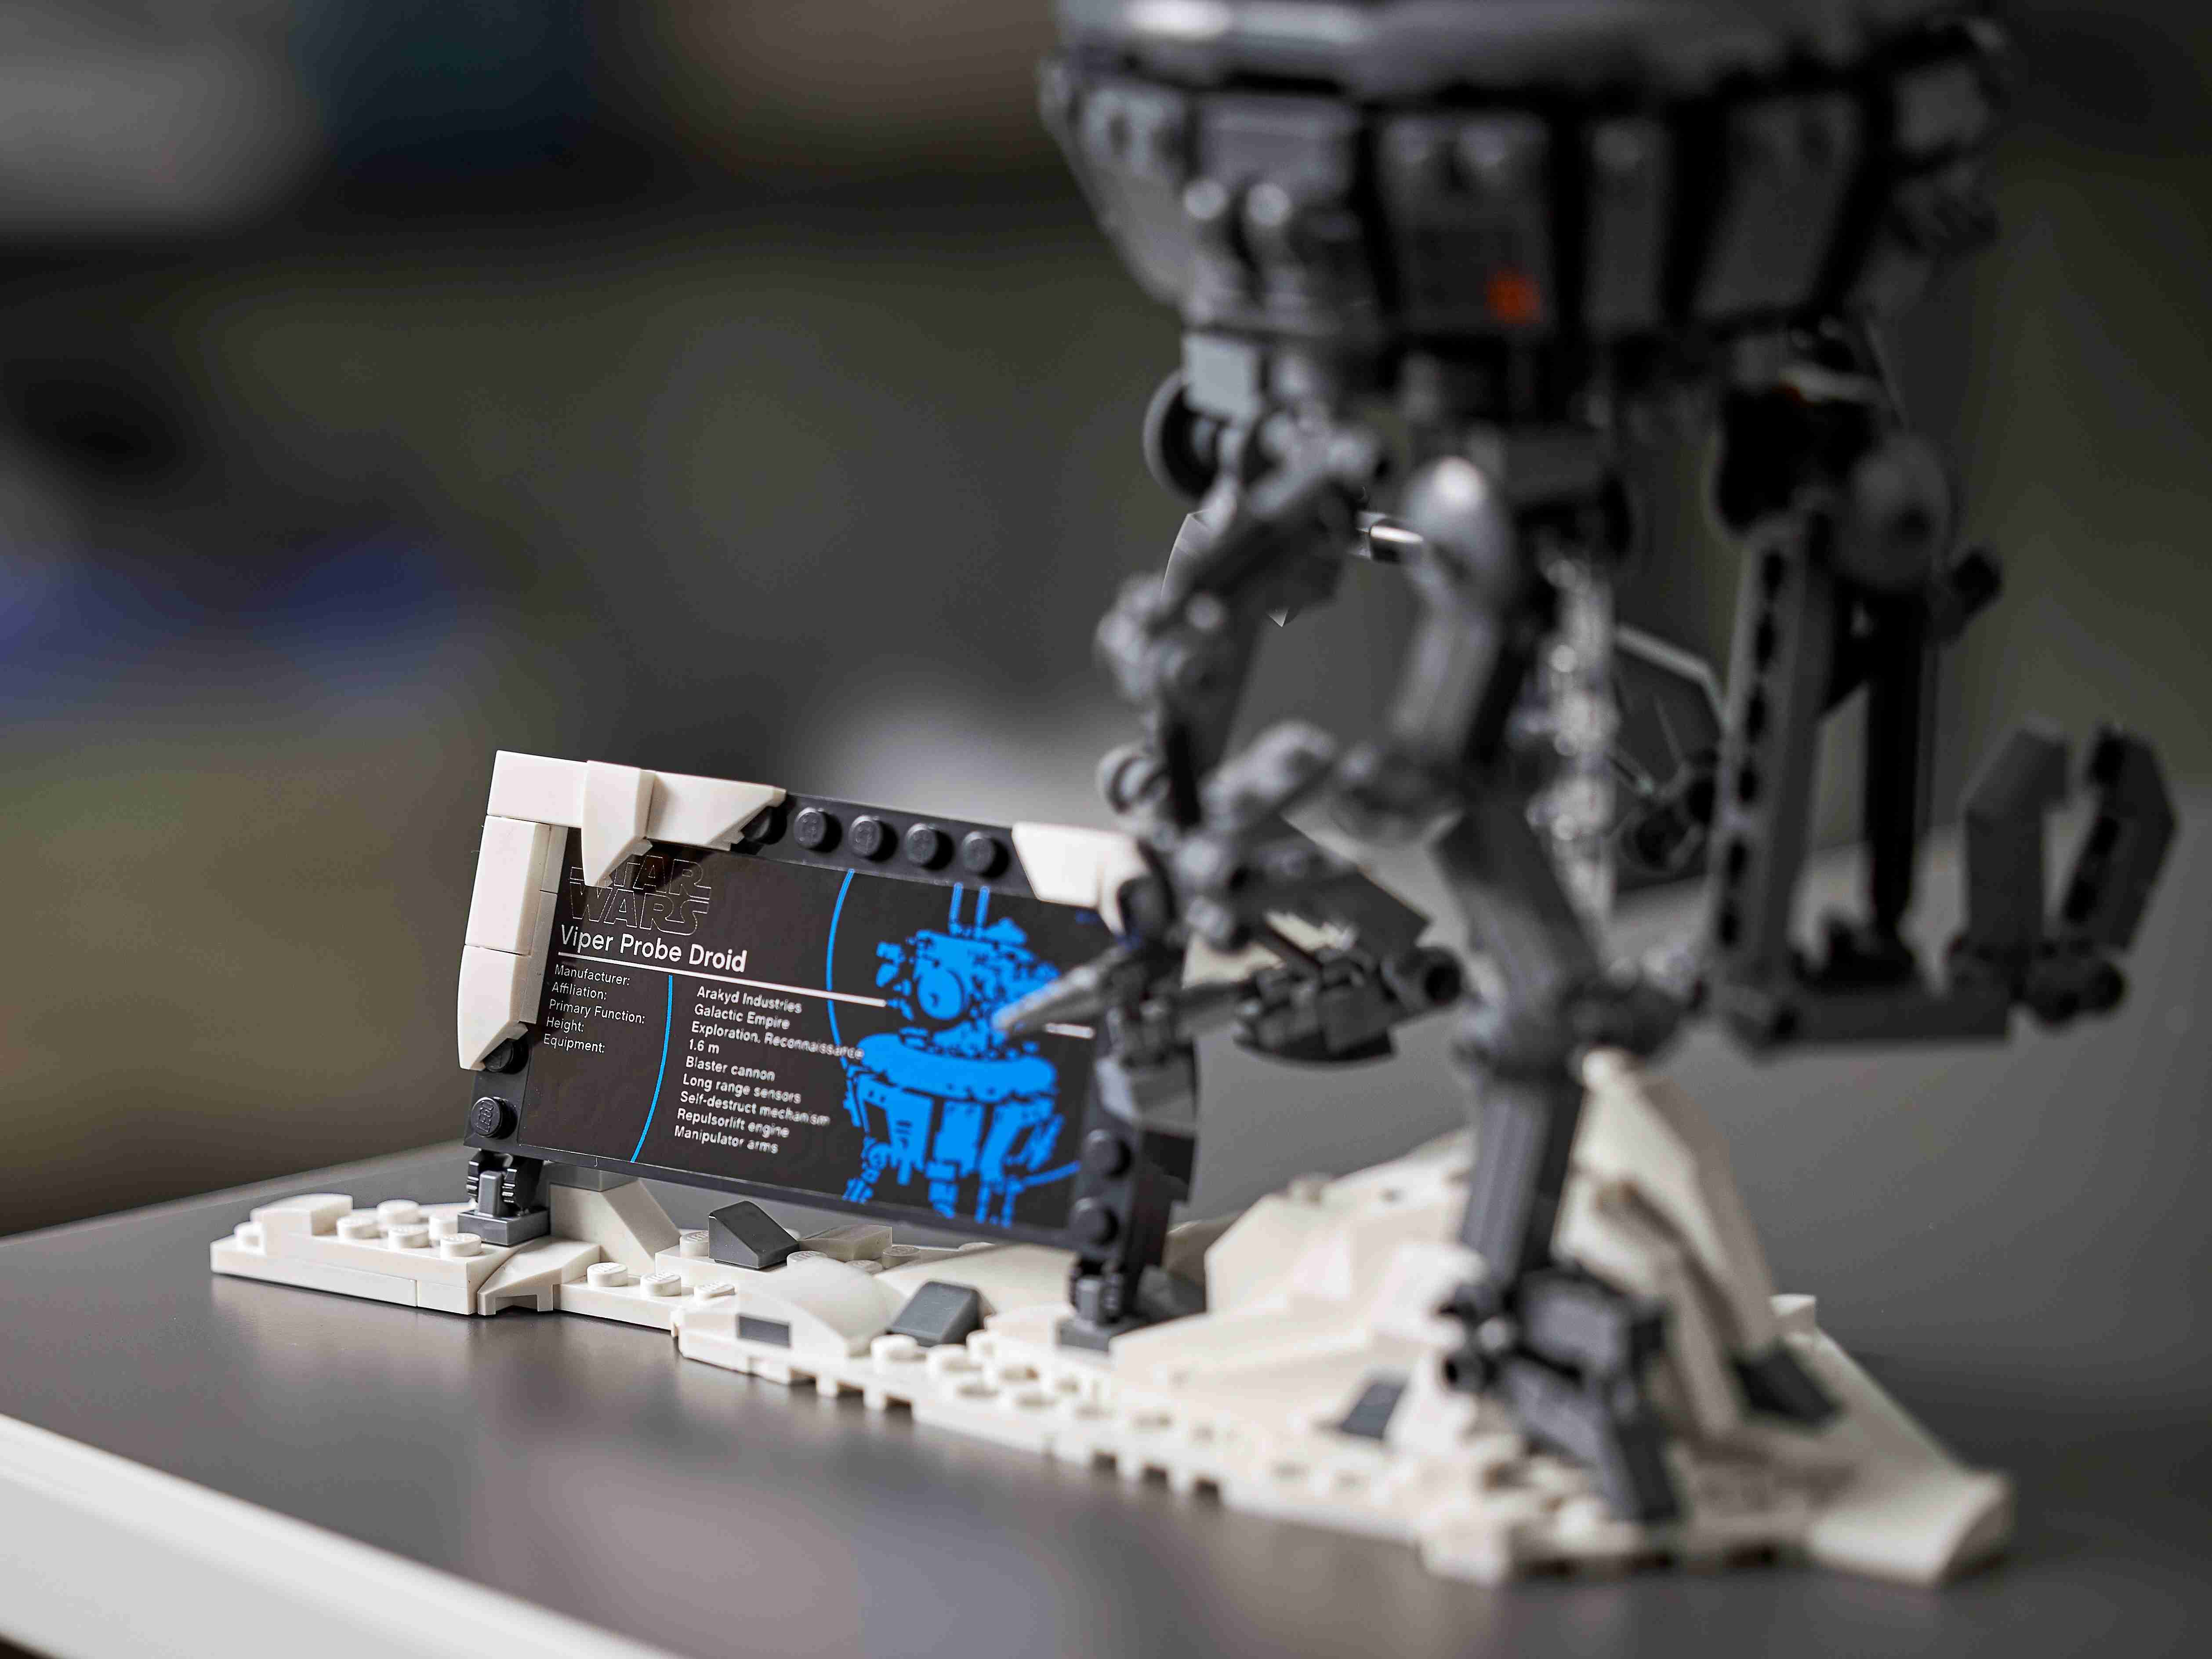 LEGO 75306 Star Wars Imperialer Suchdroide, von Das Imperium schlägt zurück